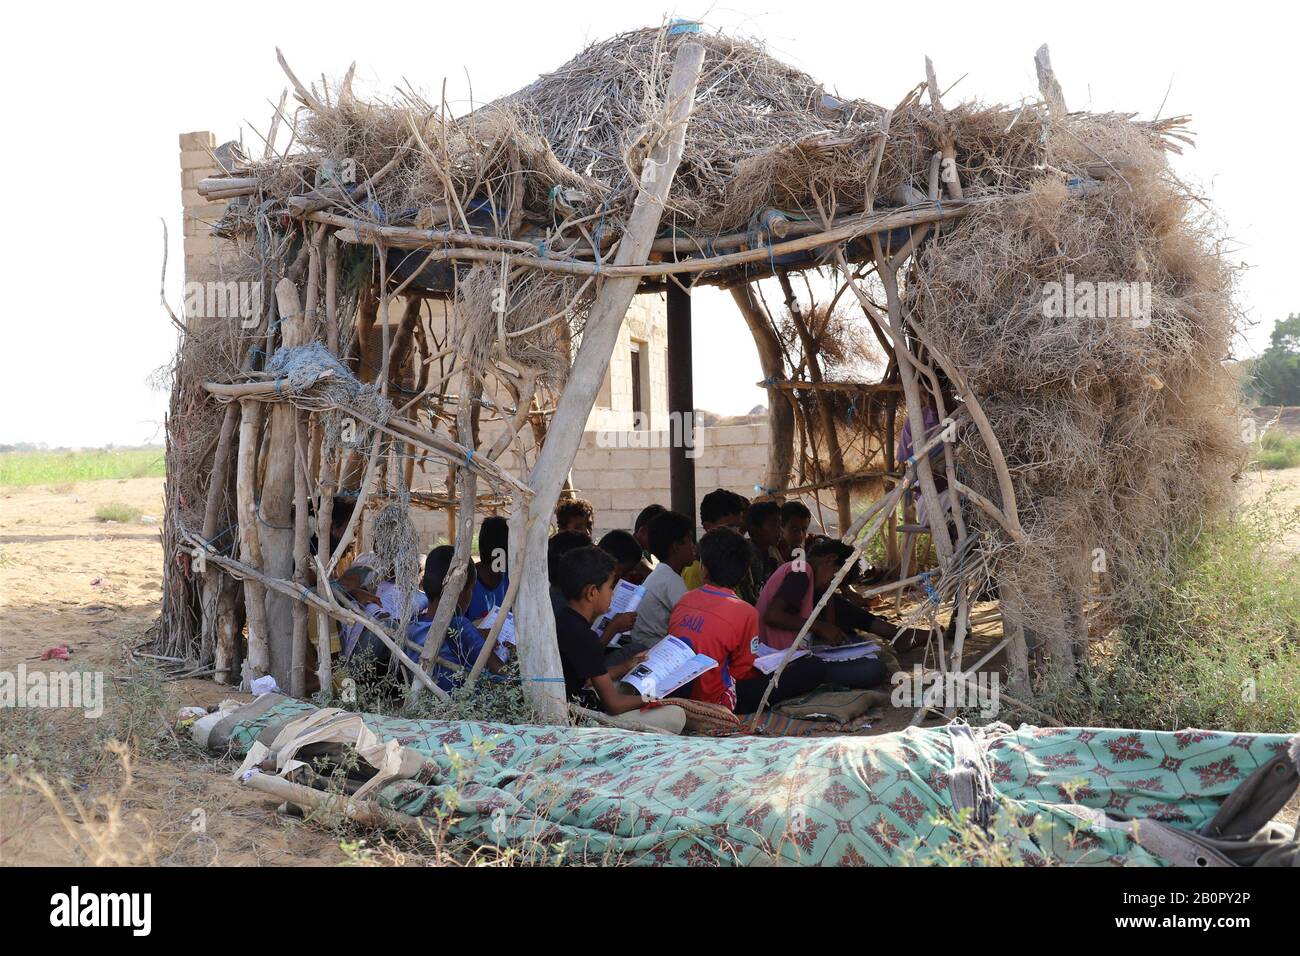 Beijing, Yémen. 19 février 2020. Les élèves étudient dans une hutte utilisée comme salle de classe dans une école du district de Hajjah, au Yémen, le 19 février 2020. À la fin de l'année 2019, la guerre au Yémen a forcé plus de deux millions d'enfants à quitter l'école et à mettre 3,7 millions d'autres enfants à haut risque en raison du non-paiement des salaires des enseignants, selon le Fonds des Nations Unies pour l'enfance (UNICEF). Crédit: Mohammed Mohammed/Xinhua/Alay Live News Banque D'Images